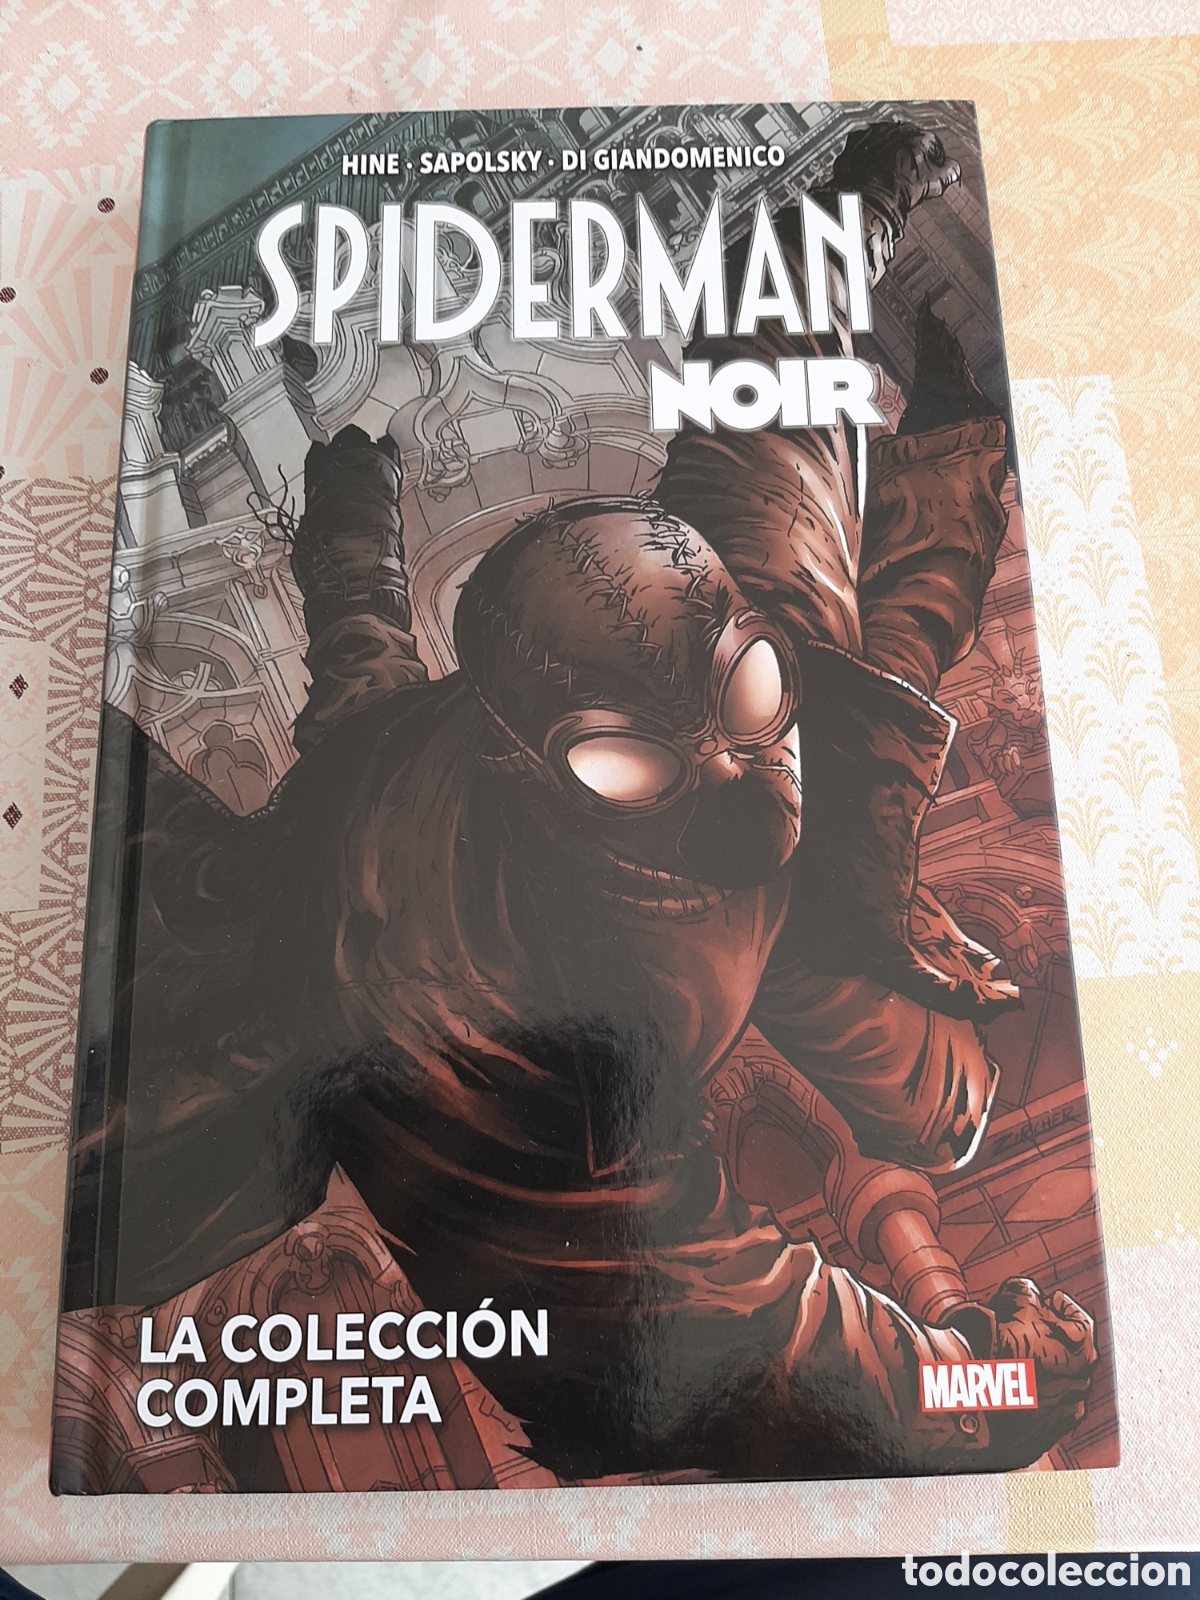 spiderman noir, marvel omnibus, la colección co - Buy Marvel comics,  publisher Panini on todocoleccion